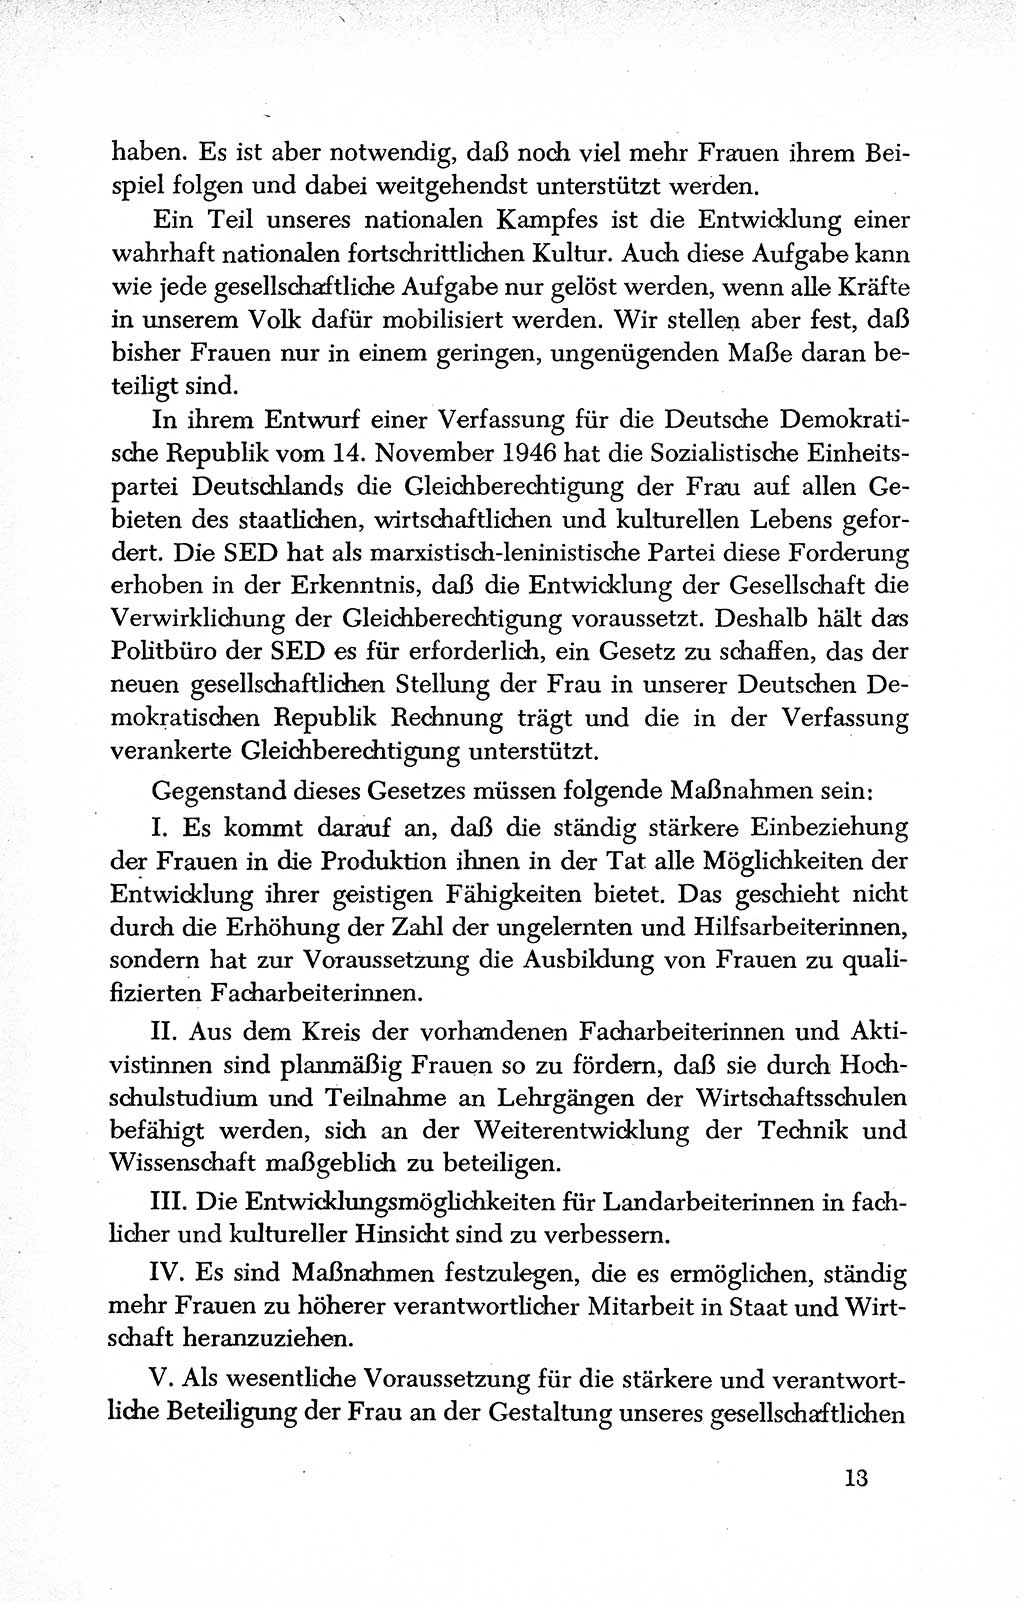 Dokumente der Sozialistischen Einheitspartei Deutschlands (SED) [Deutsche Demokratische Republik (DDR)] 1950-1952, Seite 13 (Dok. SED DDR 1950-1952, S. 13)